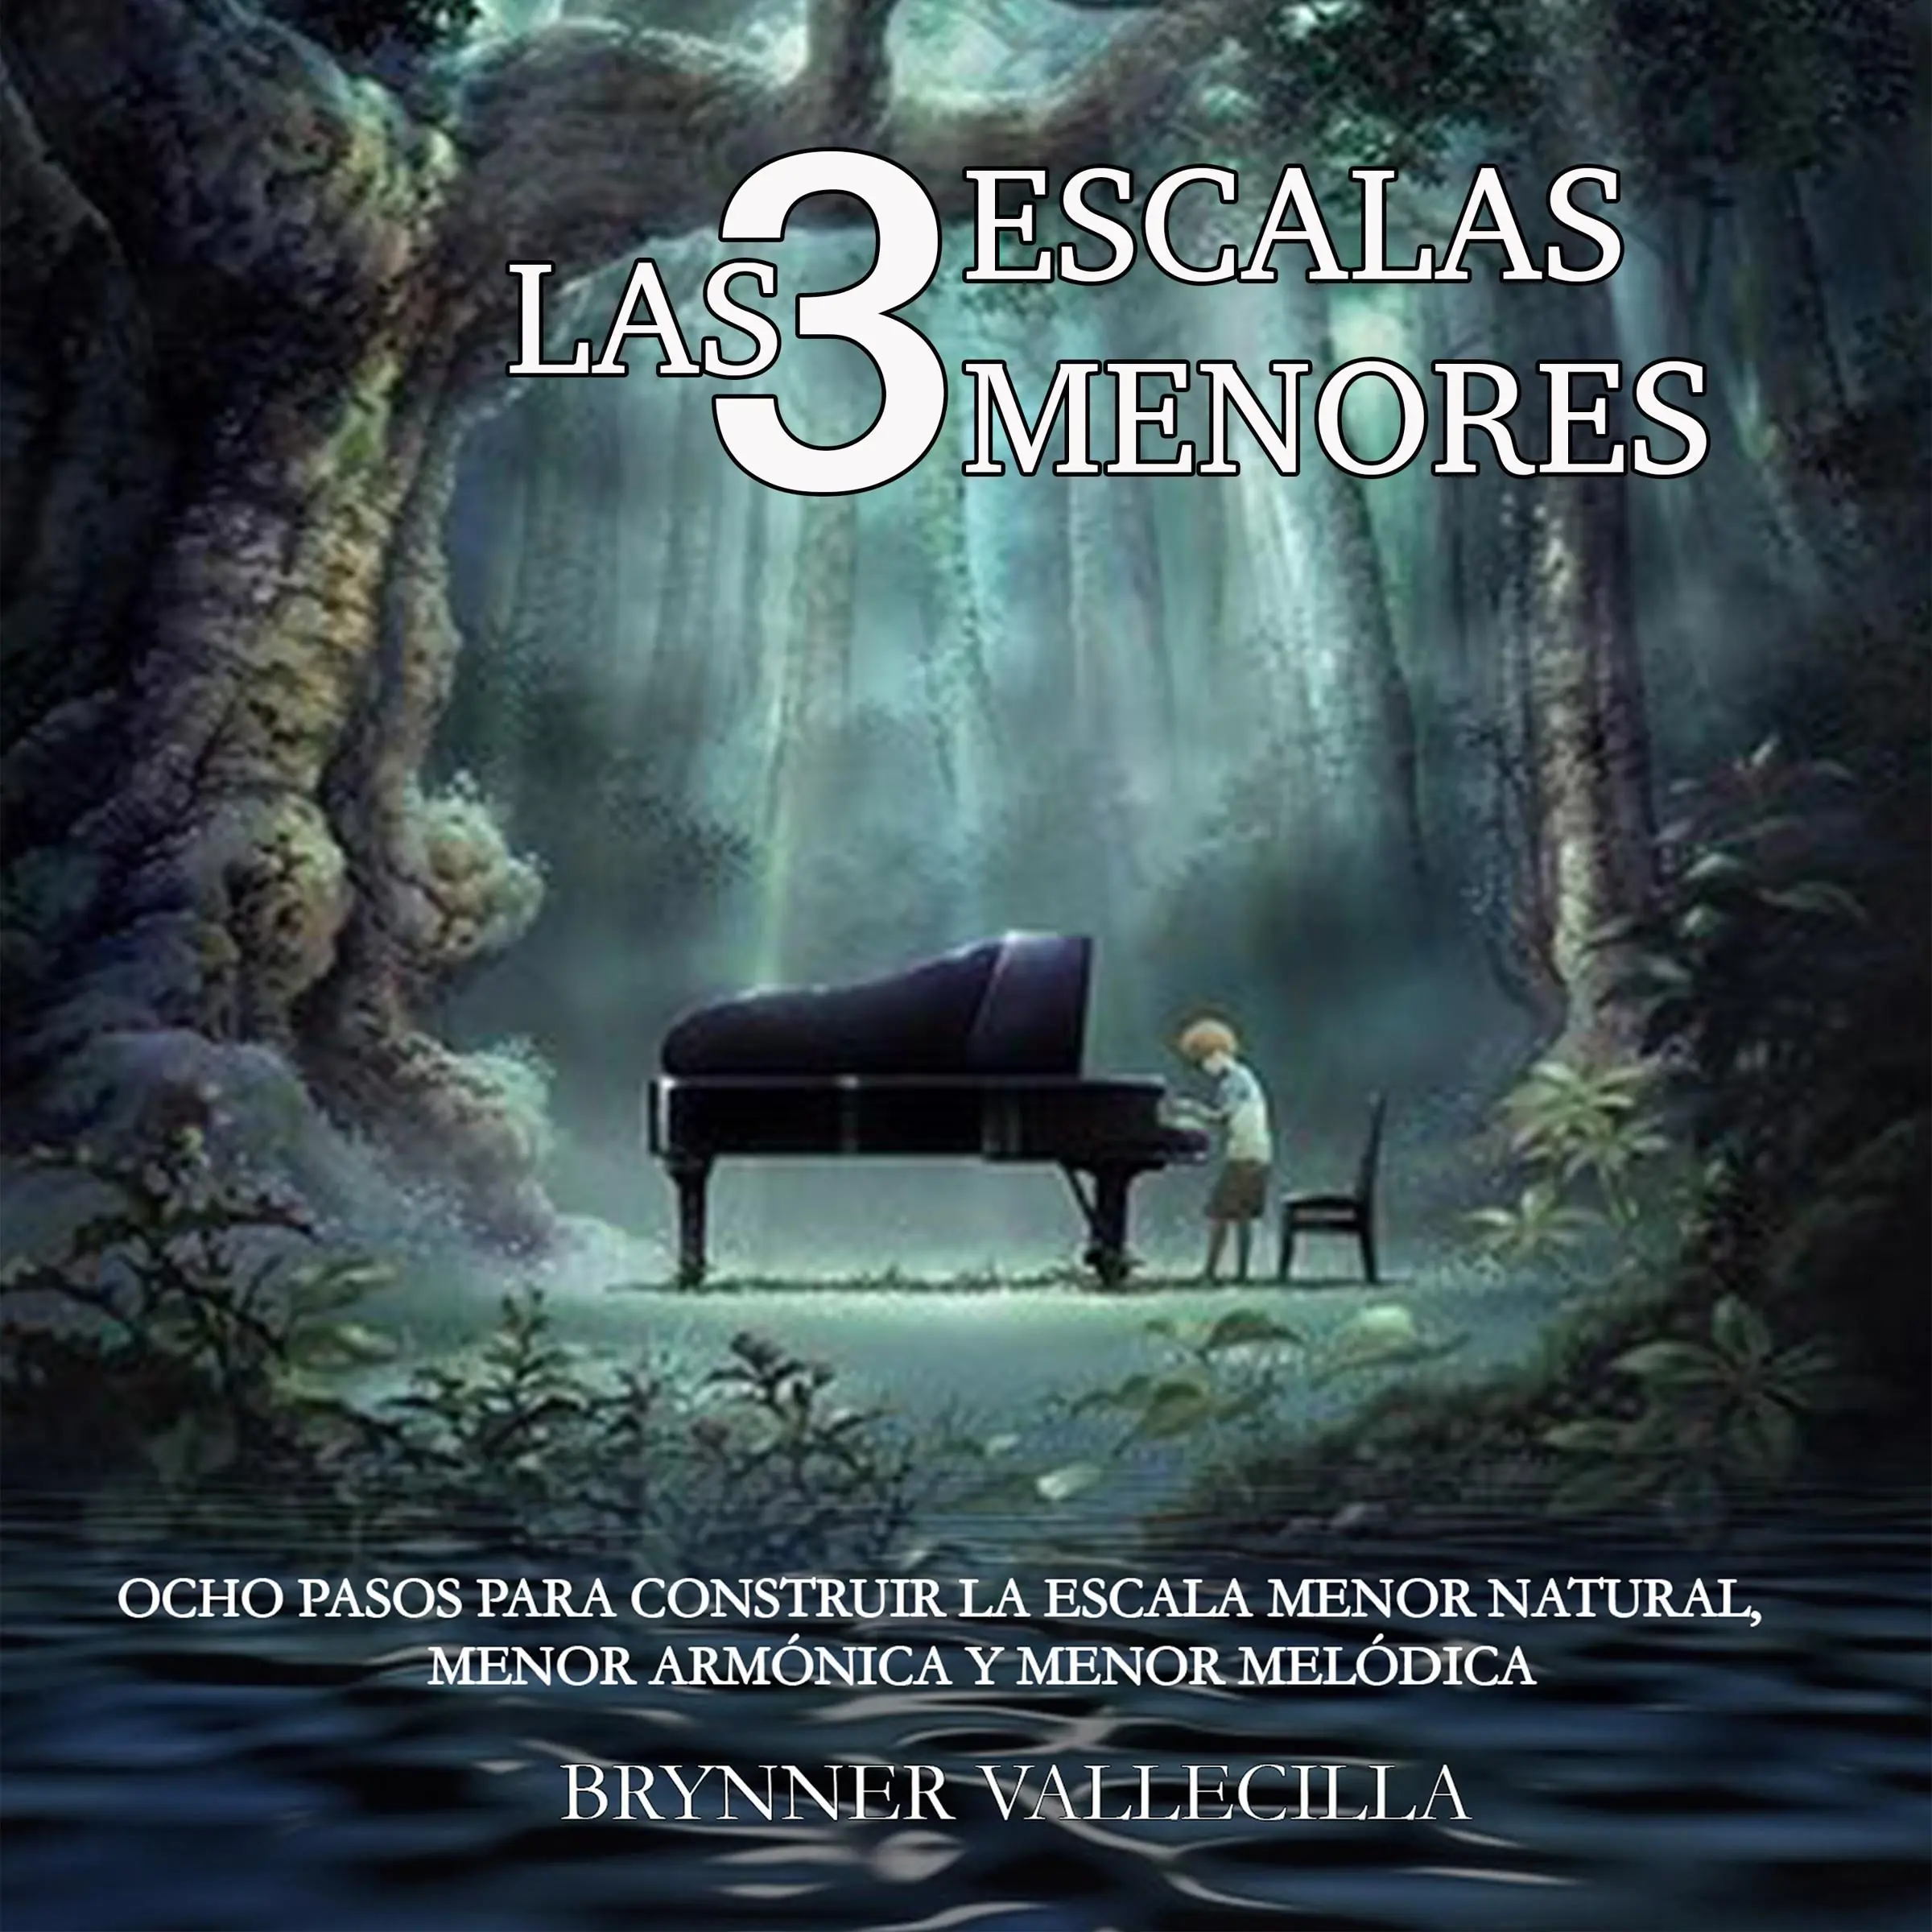 LAS 3 ESCALAS MENORES Audiobook by Brynner Vallecilla